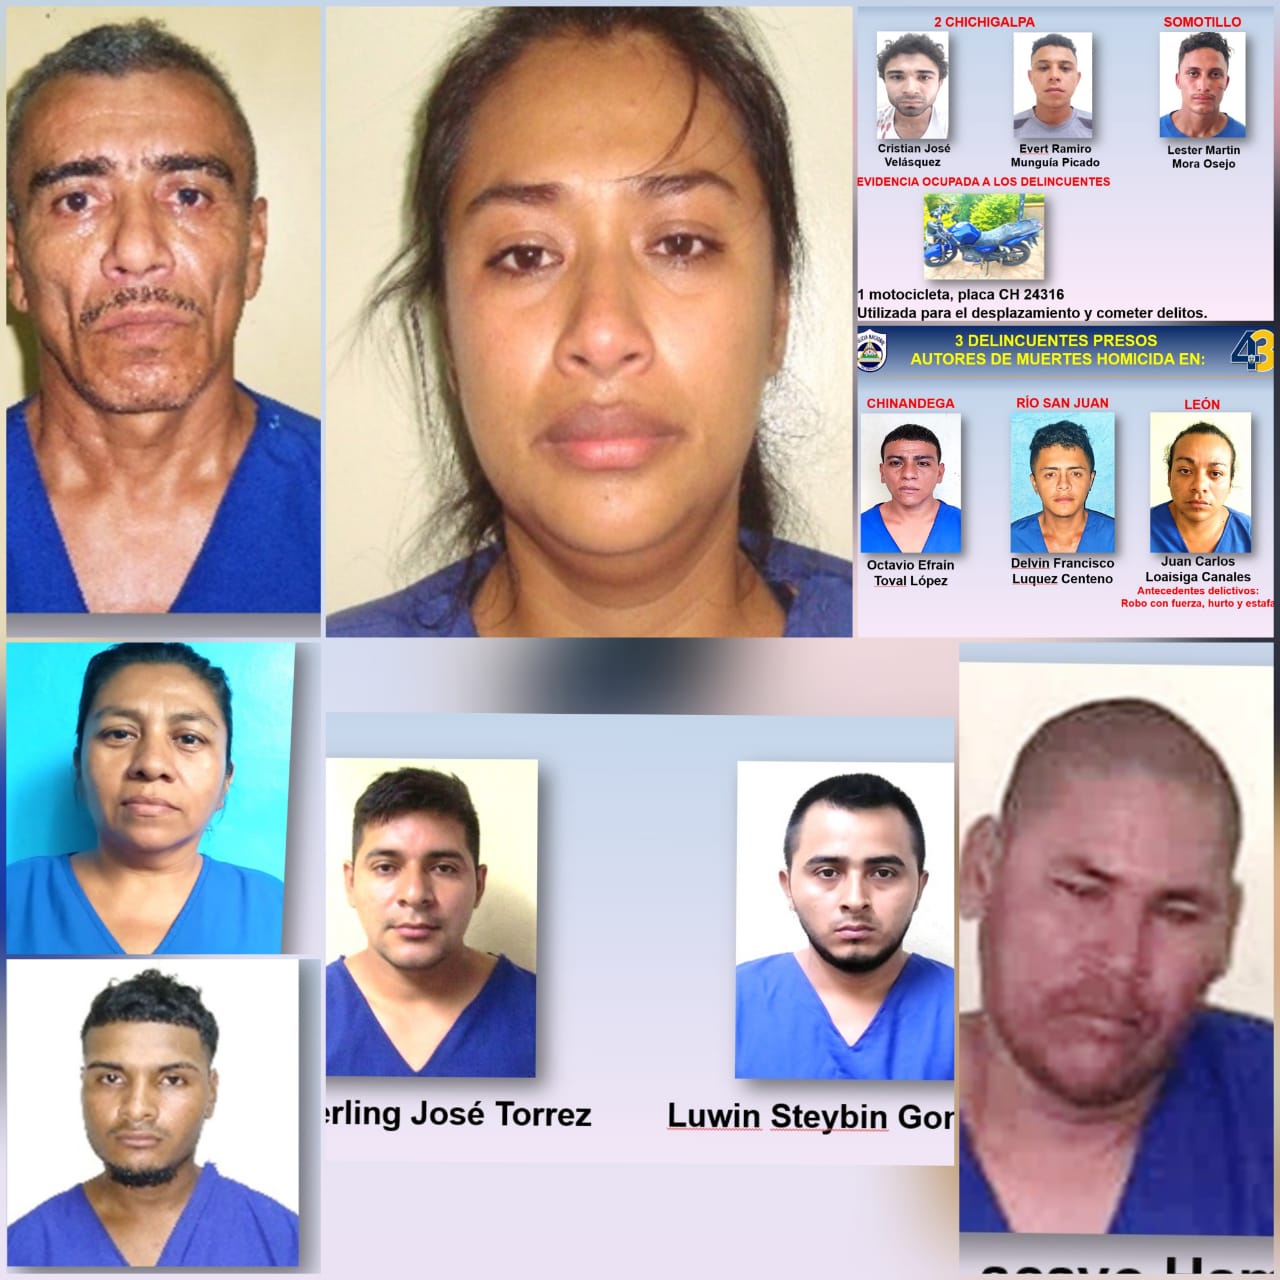 33 sujetos son detenidos por cometer homicidios asaltos y bisnear drogas en nicaragua